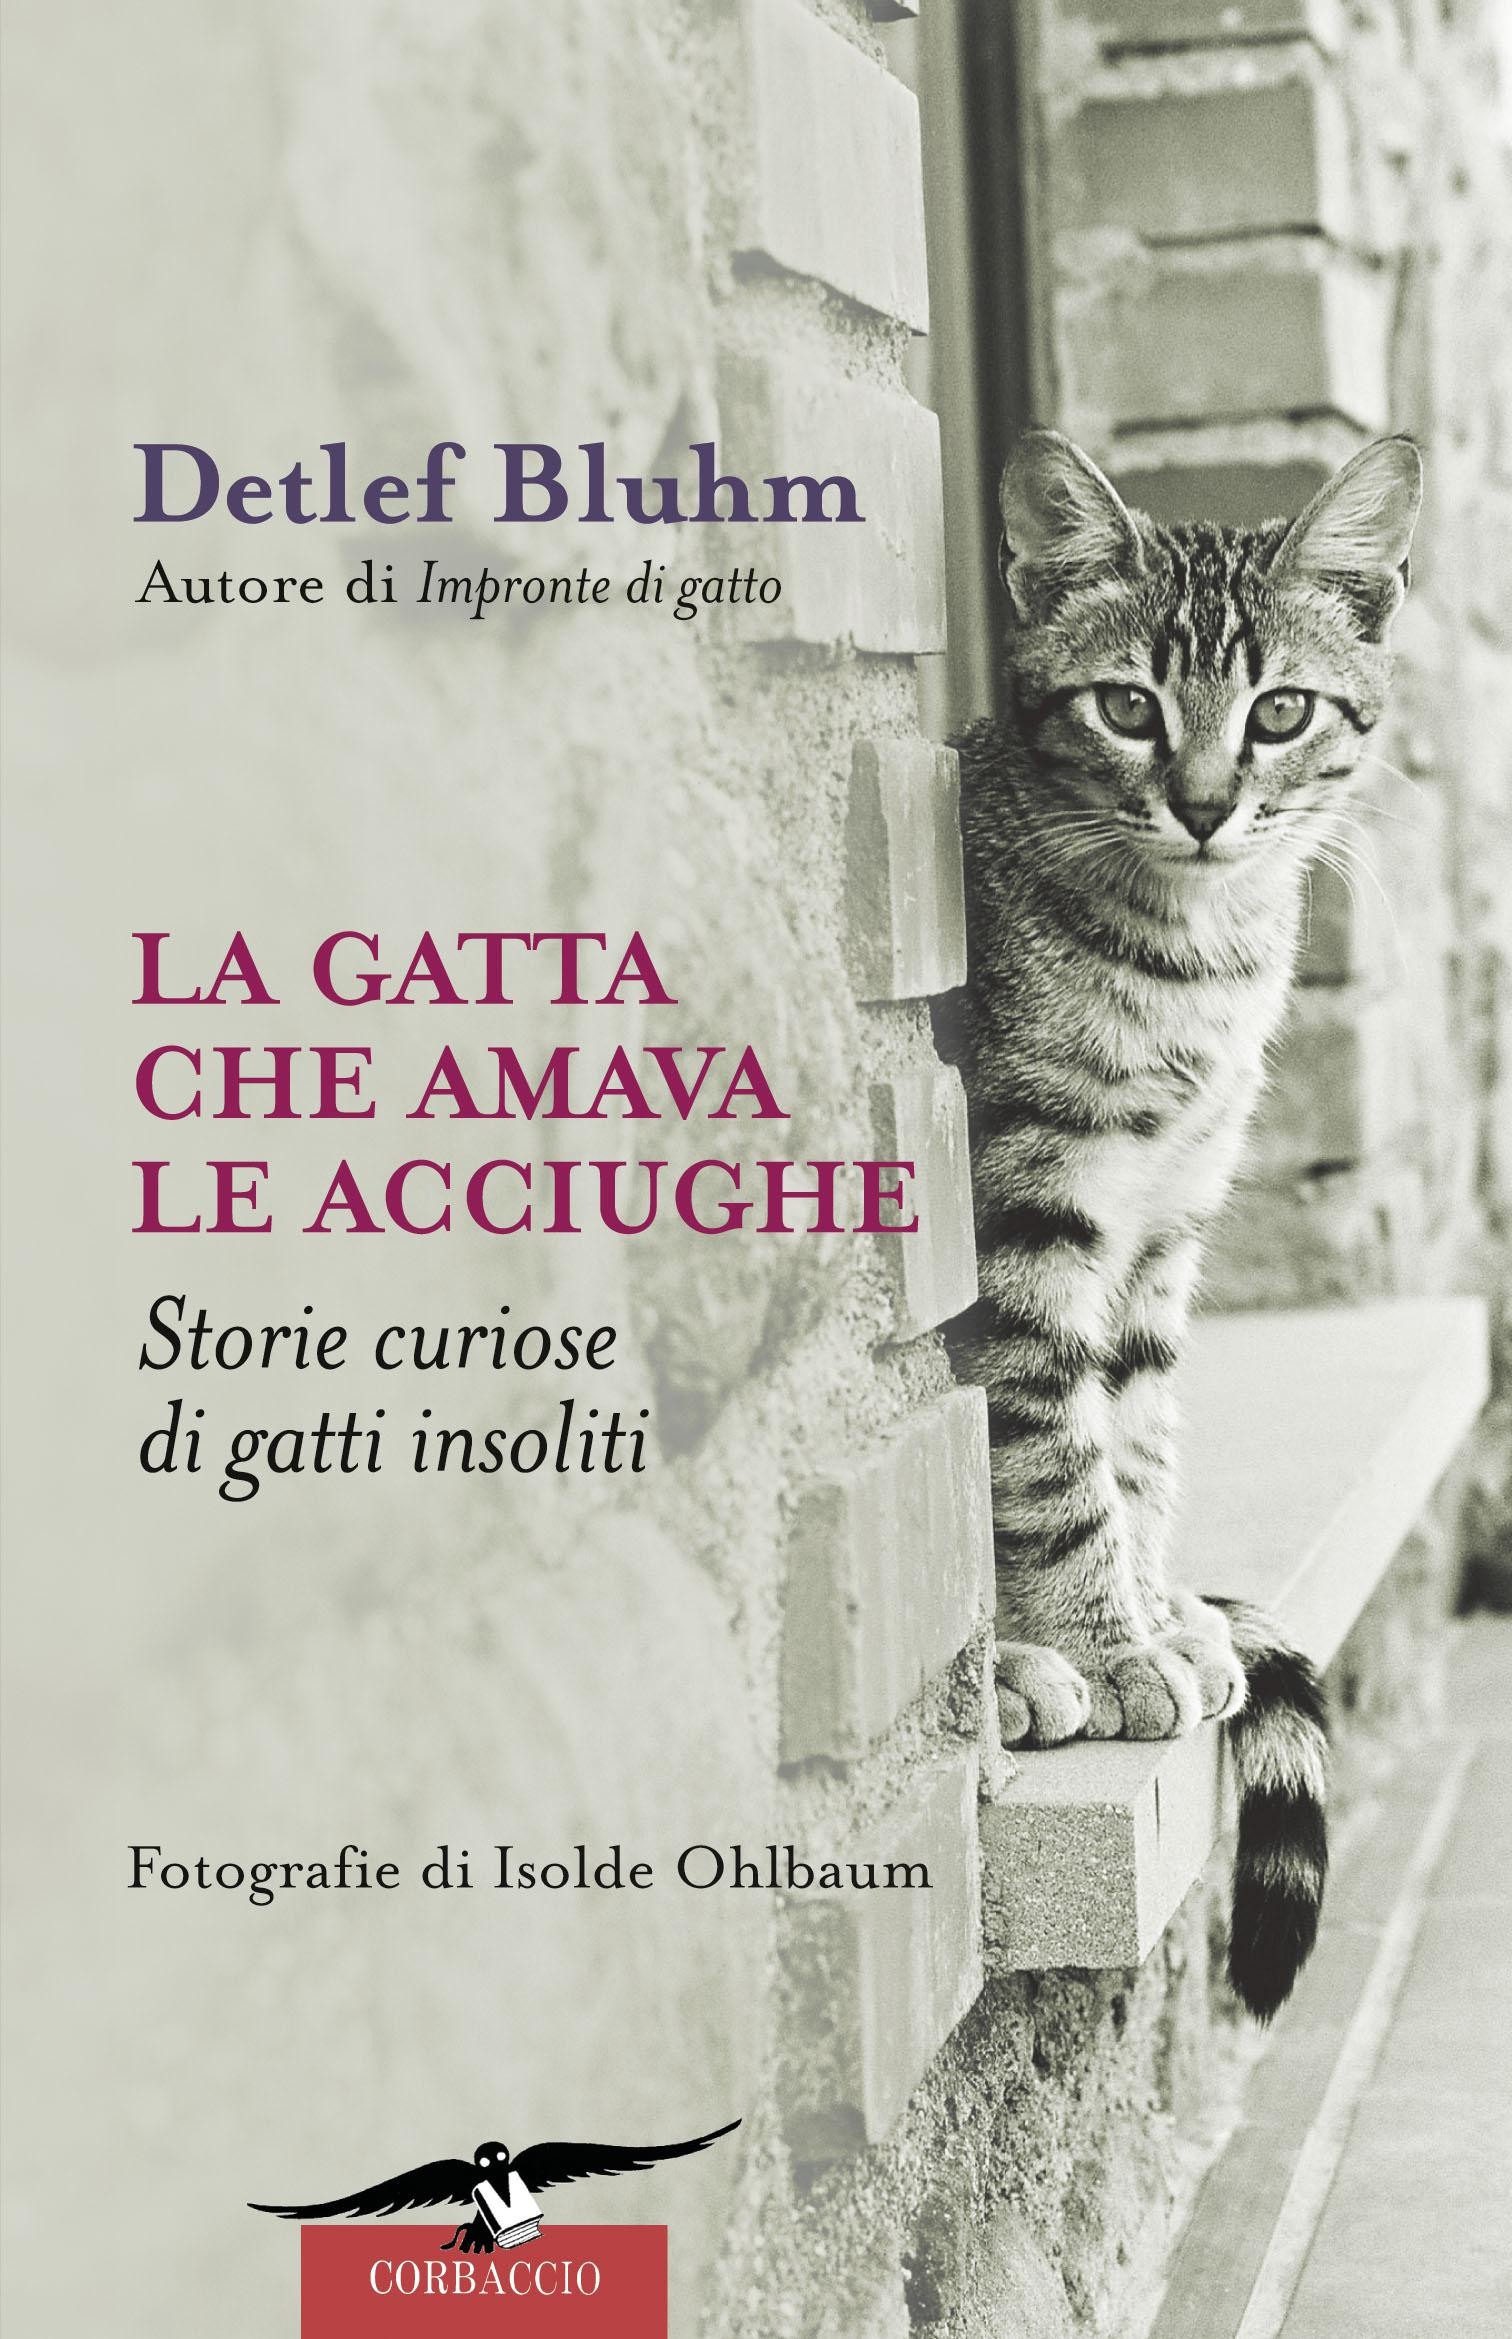 La gatta che amava le acciughe. Storie curiose di gatti insoliti - Detlef Blum